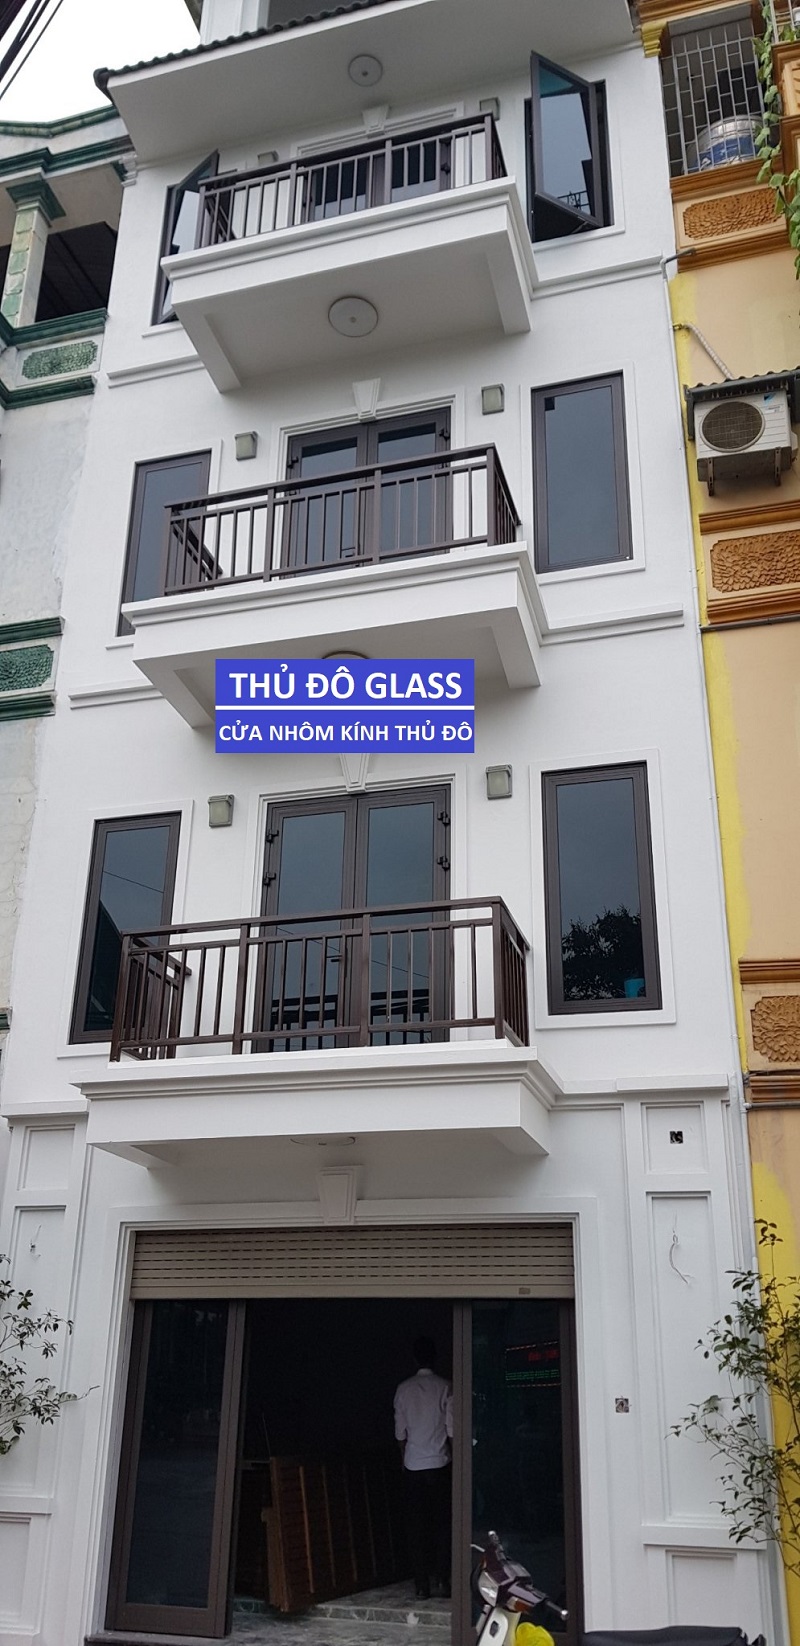 Mua cửa nhôm Xingfa ở THỦ ĐÔ GLASS